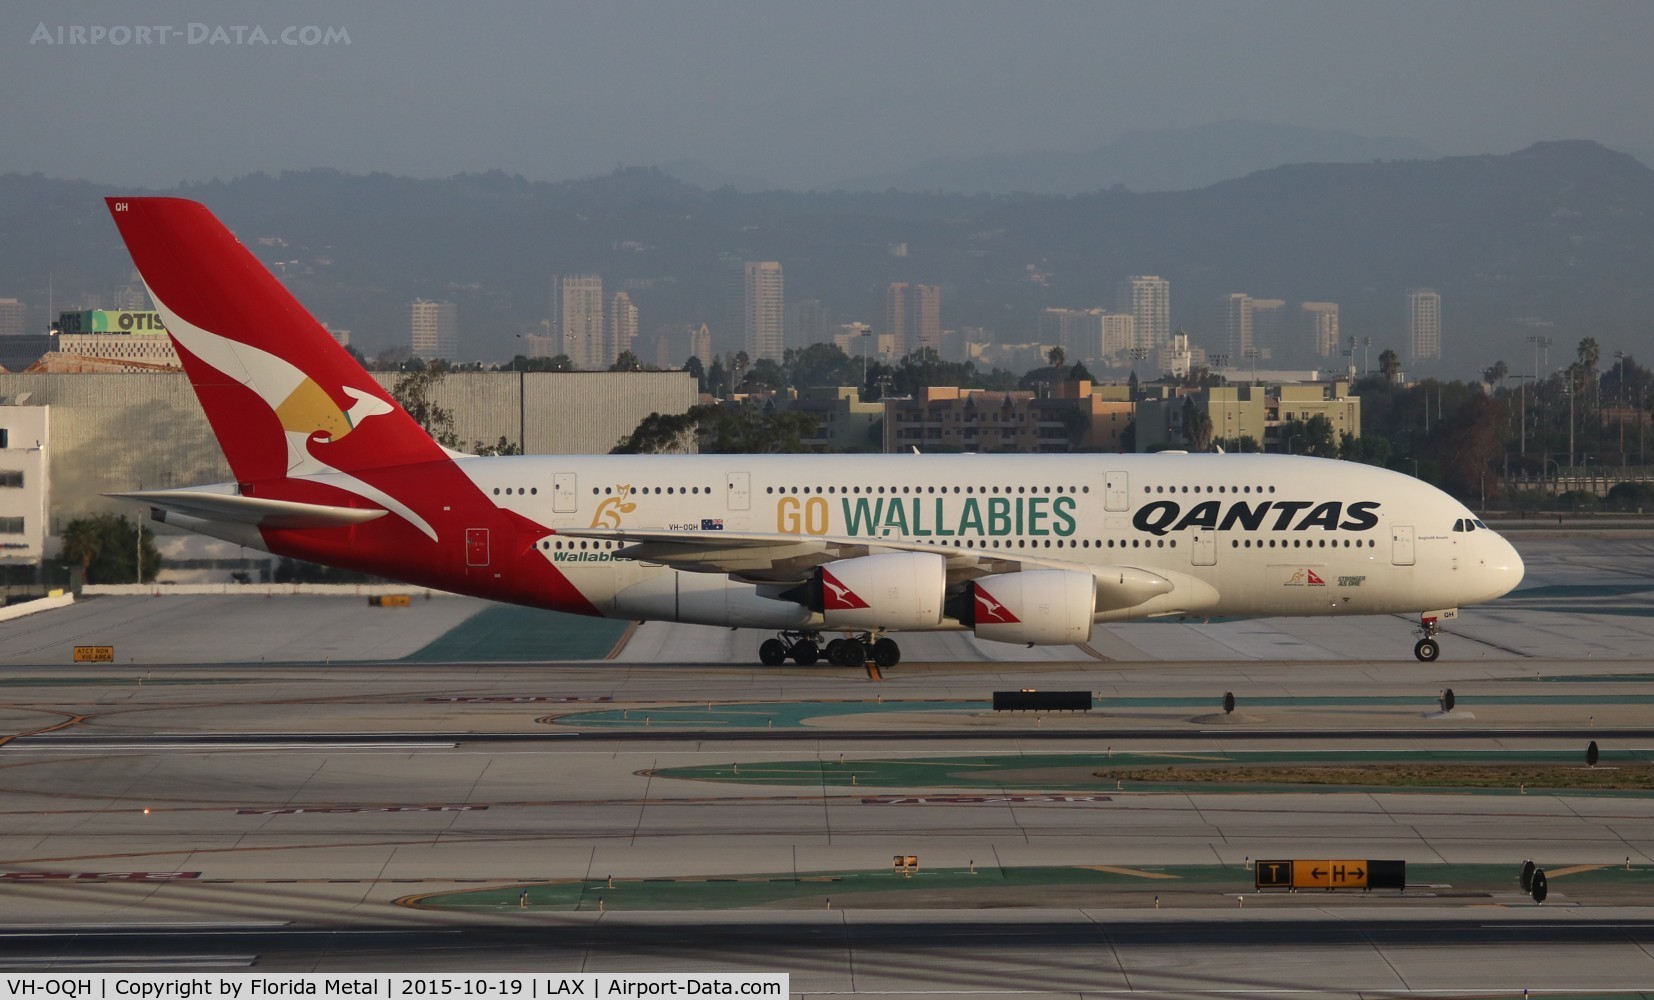 VH-OQH, 2009 Airbus A380-842 C/N 050, Qantas A380-800